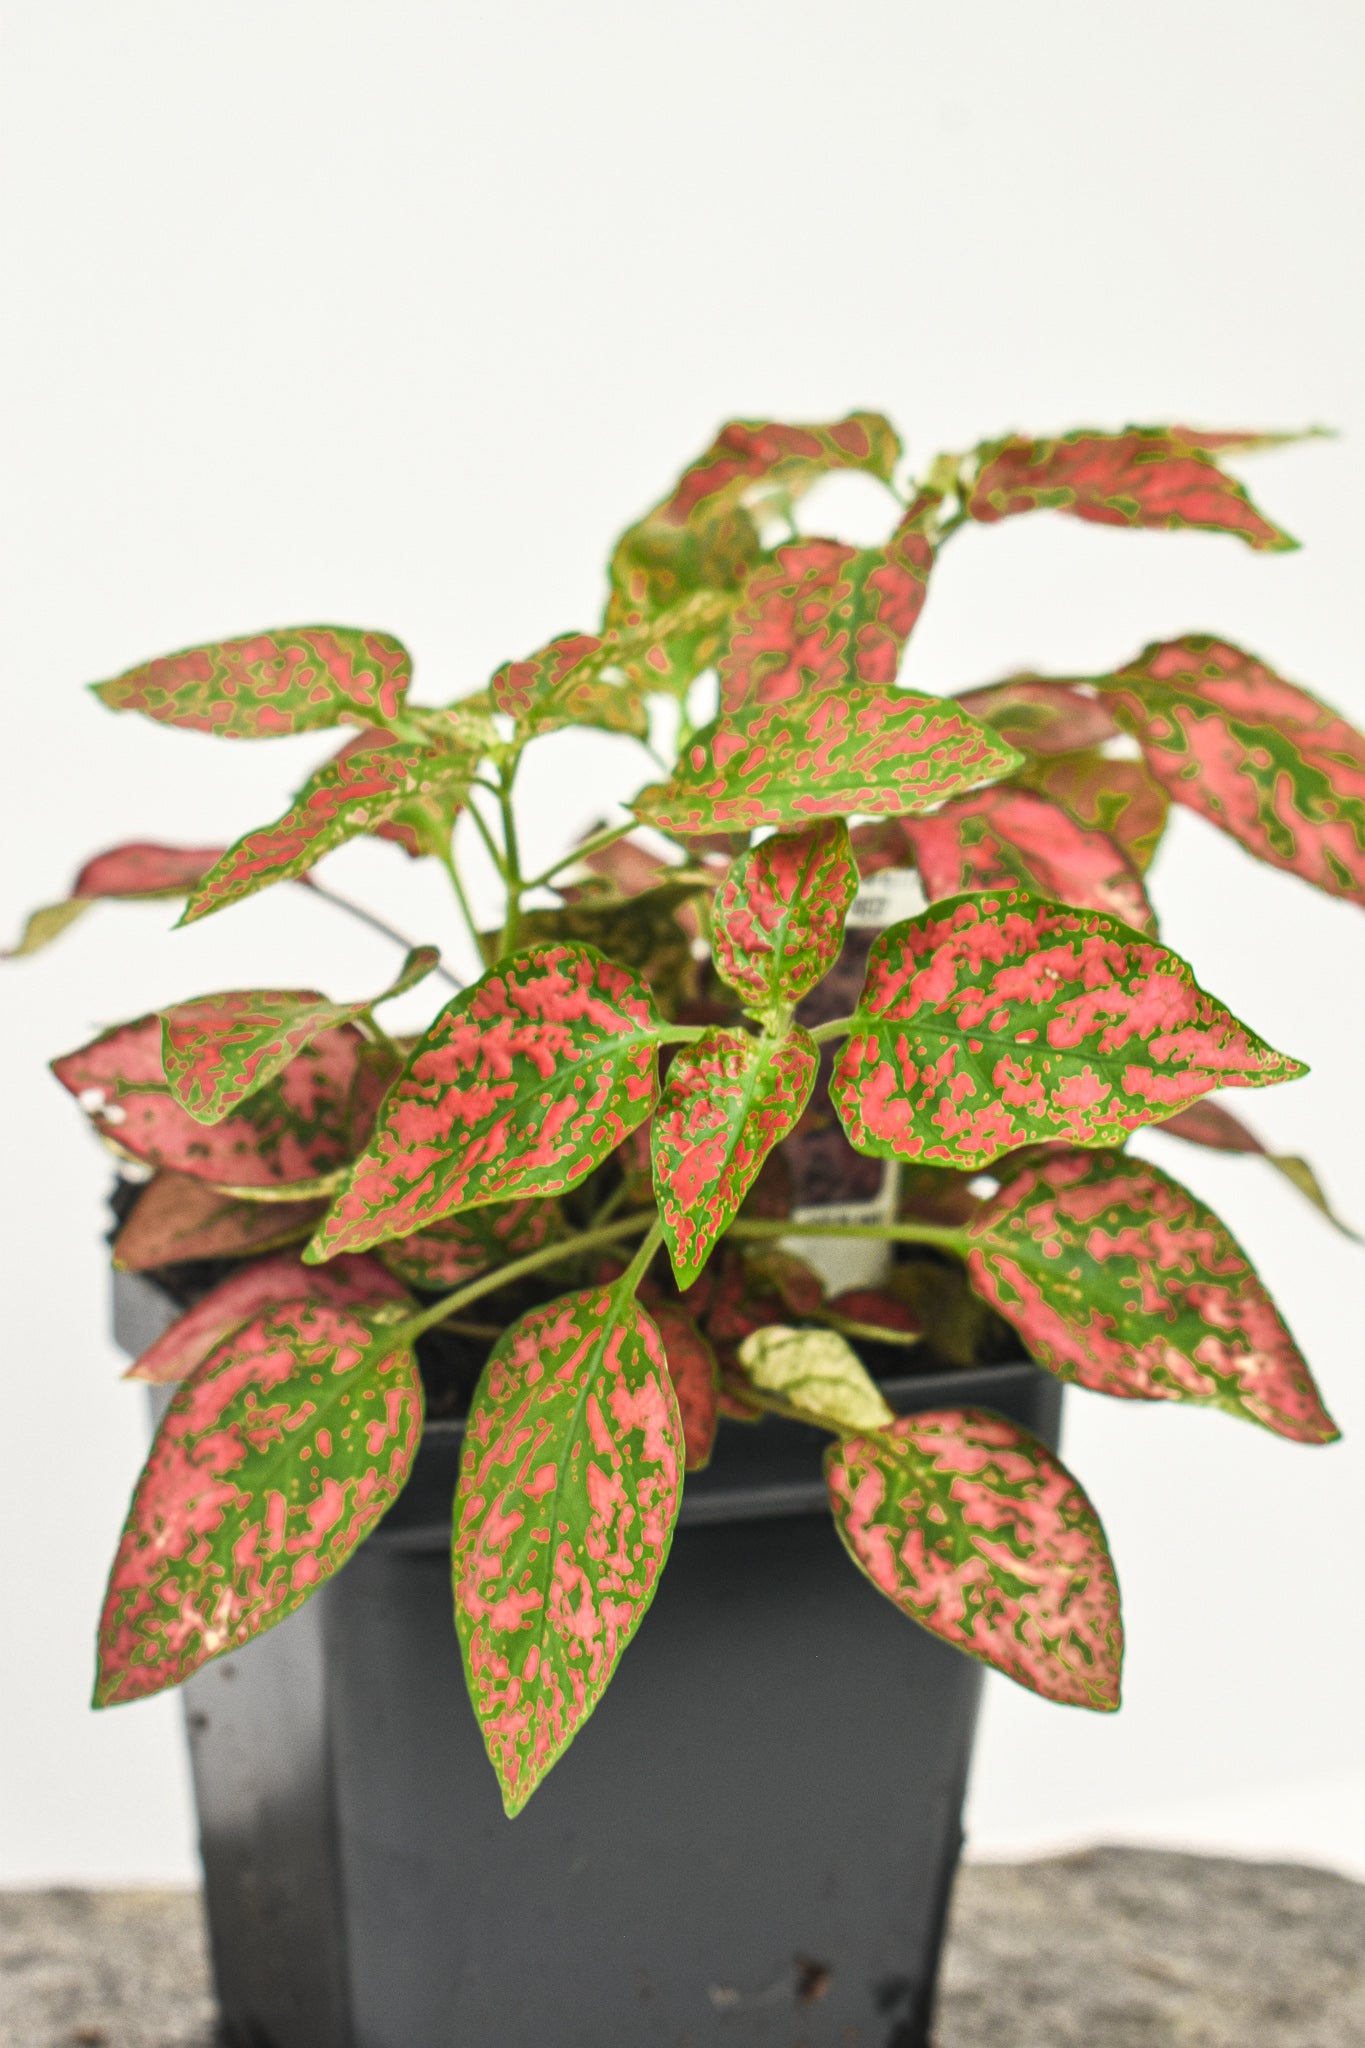 Polka Dot Plant, 'Confetti White/ Confetti Pink' - Belle's Greenhouse